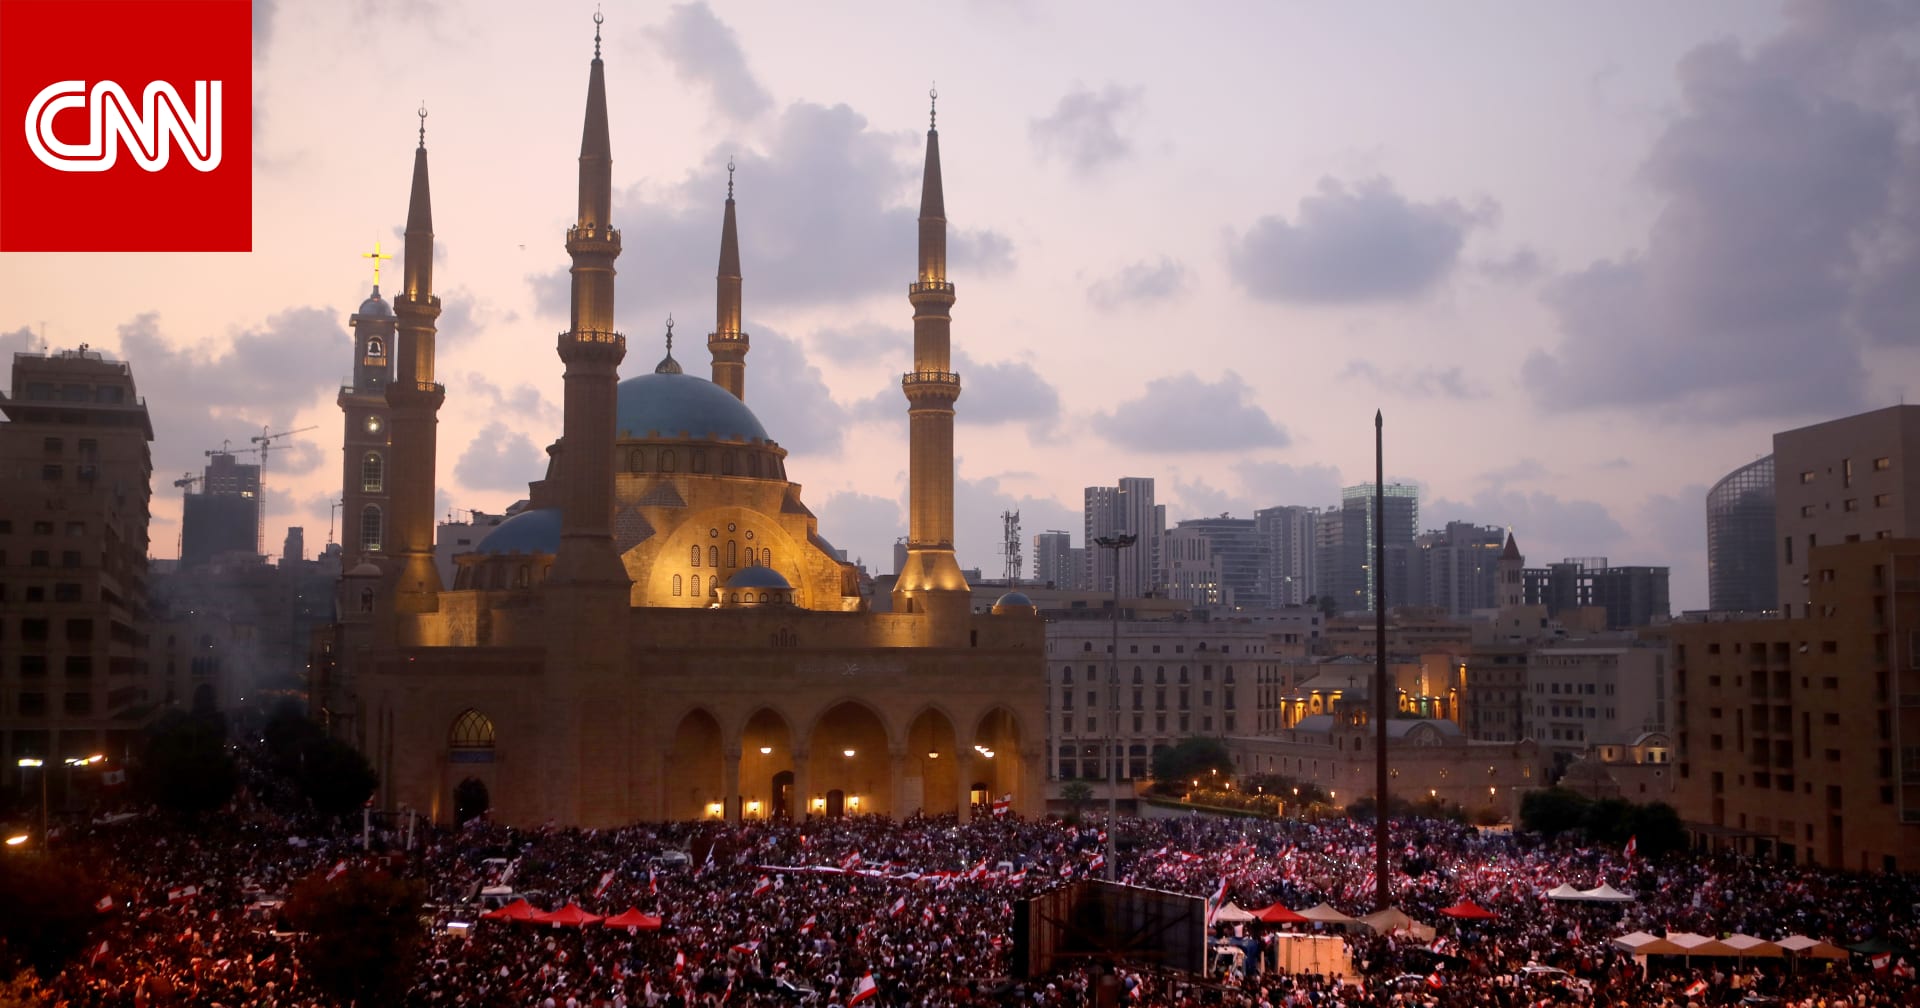 دعوة للإضراب العام في لبنان بالتزامن مع انتهاء مهلة الحريري - CNN Arabic